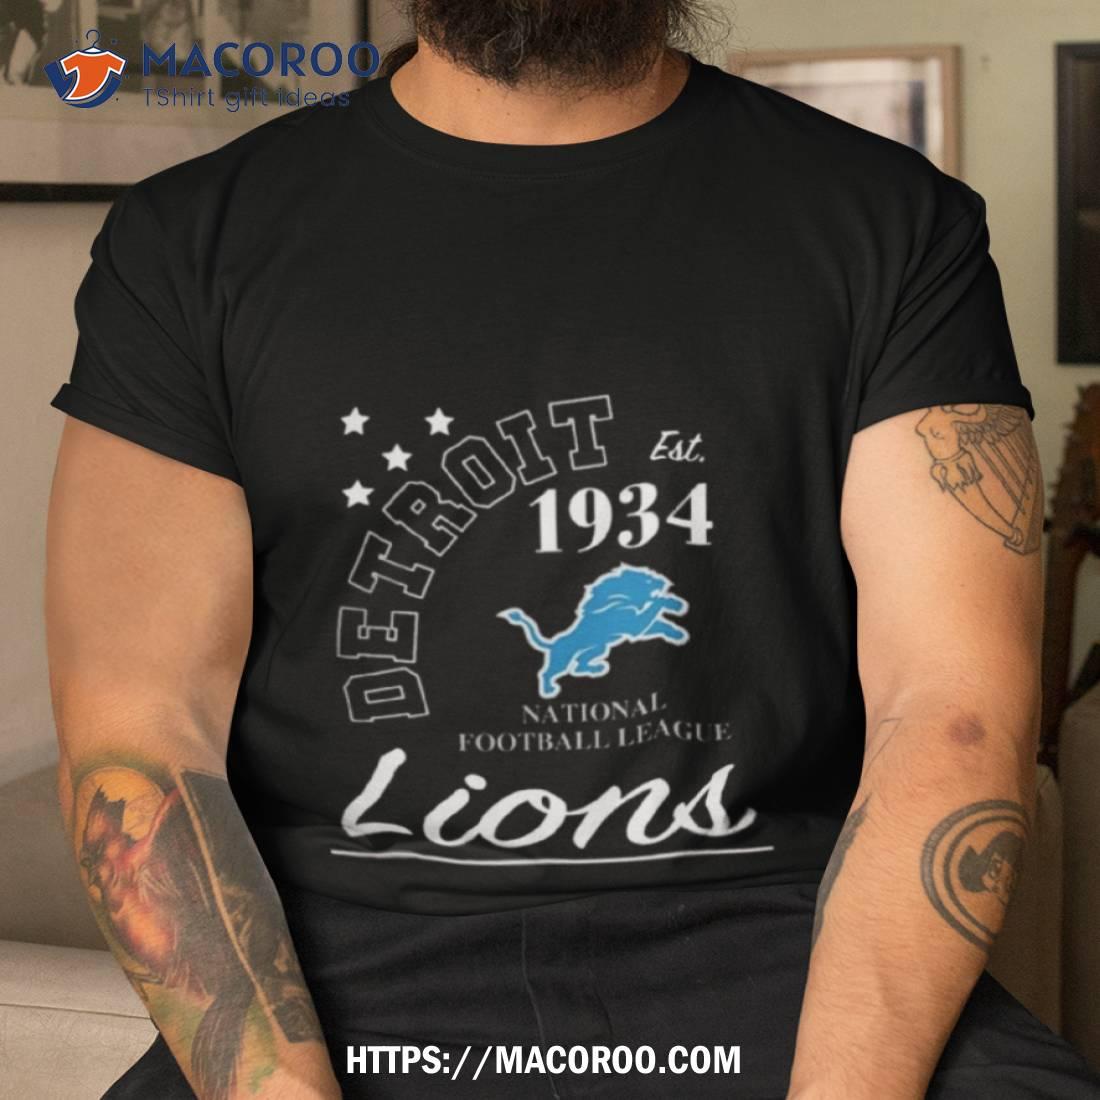 Starter Detroit Lions Men's Basic T-Shirt by Vintage Detroit Collection